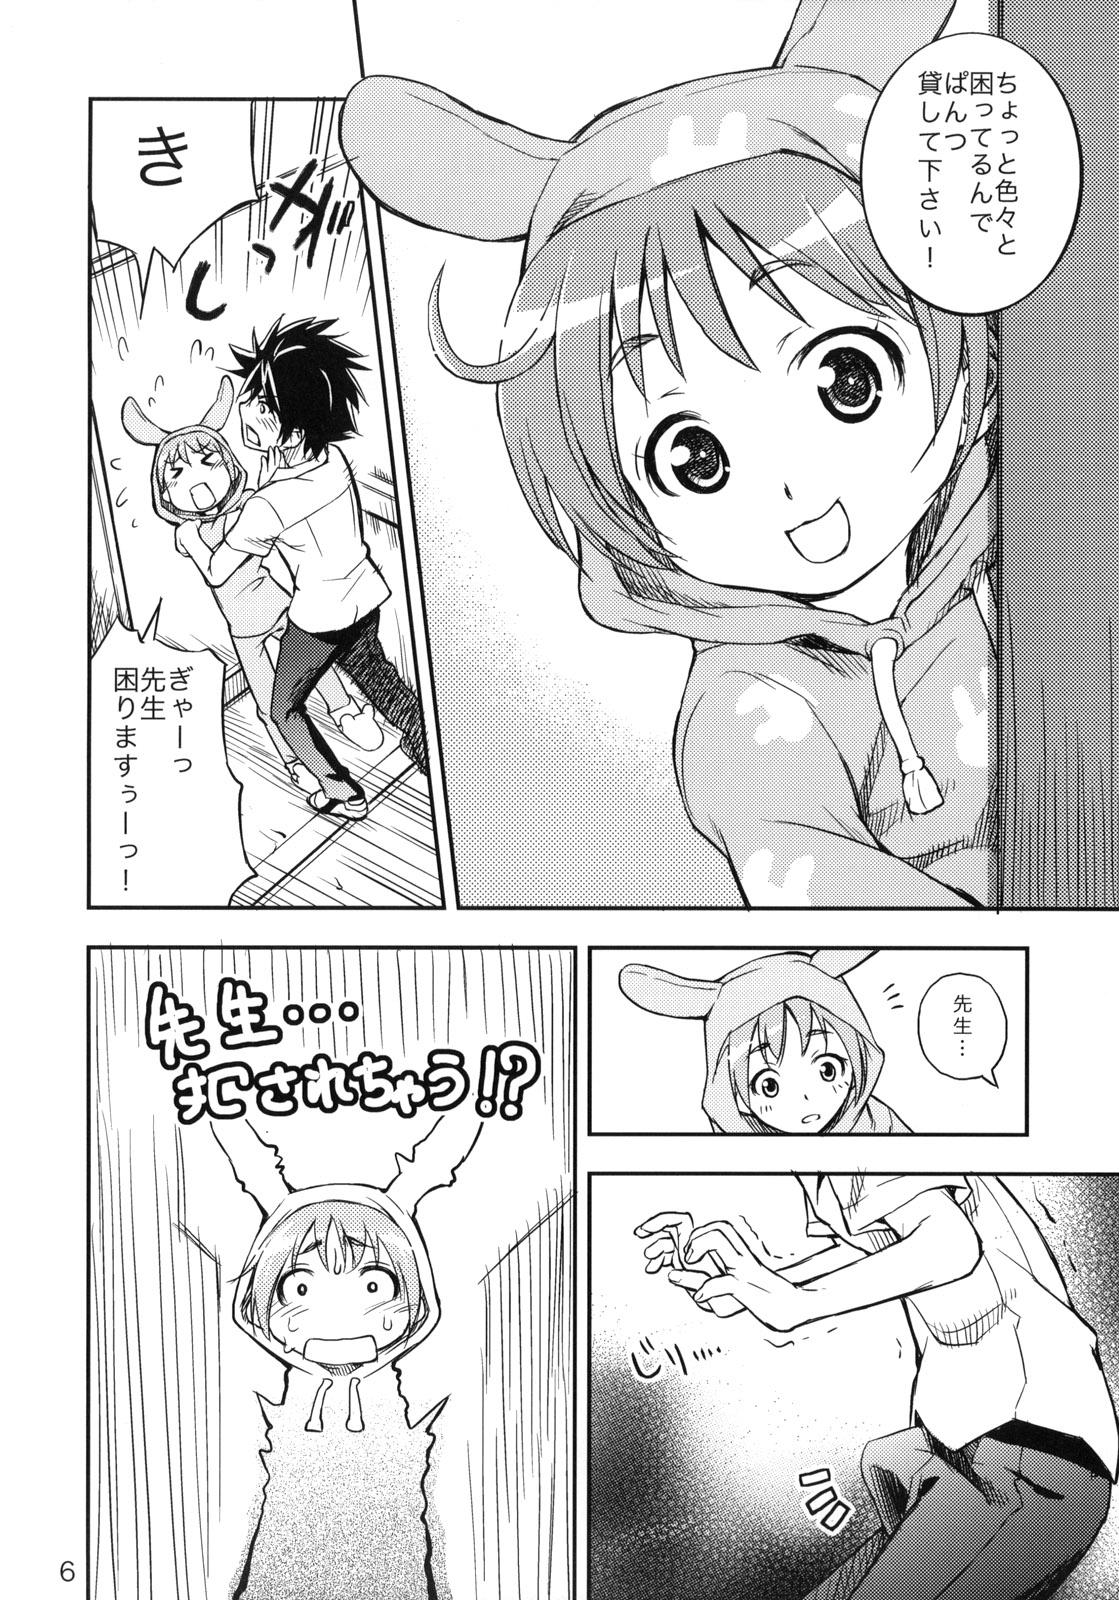 Fake Tits Toaru Pantsu no Index - Toaru majutsu no index Cbt - Page 5